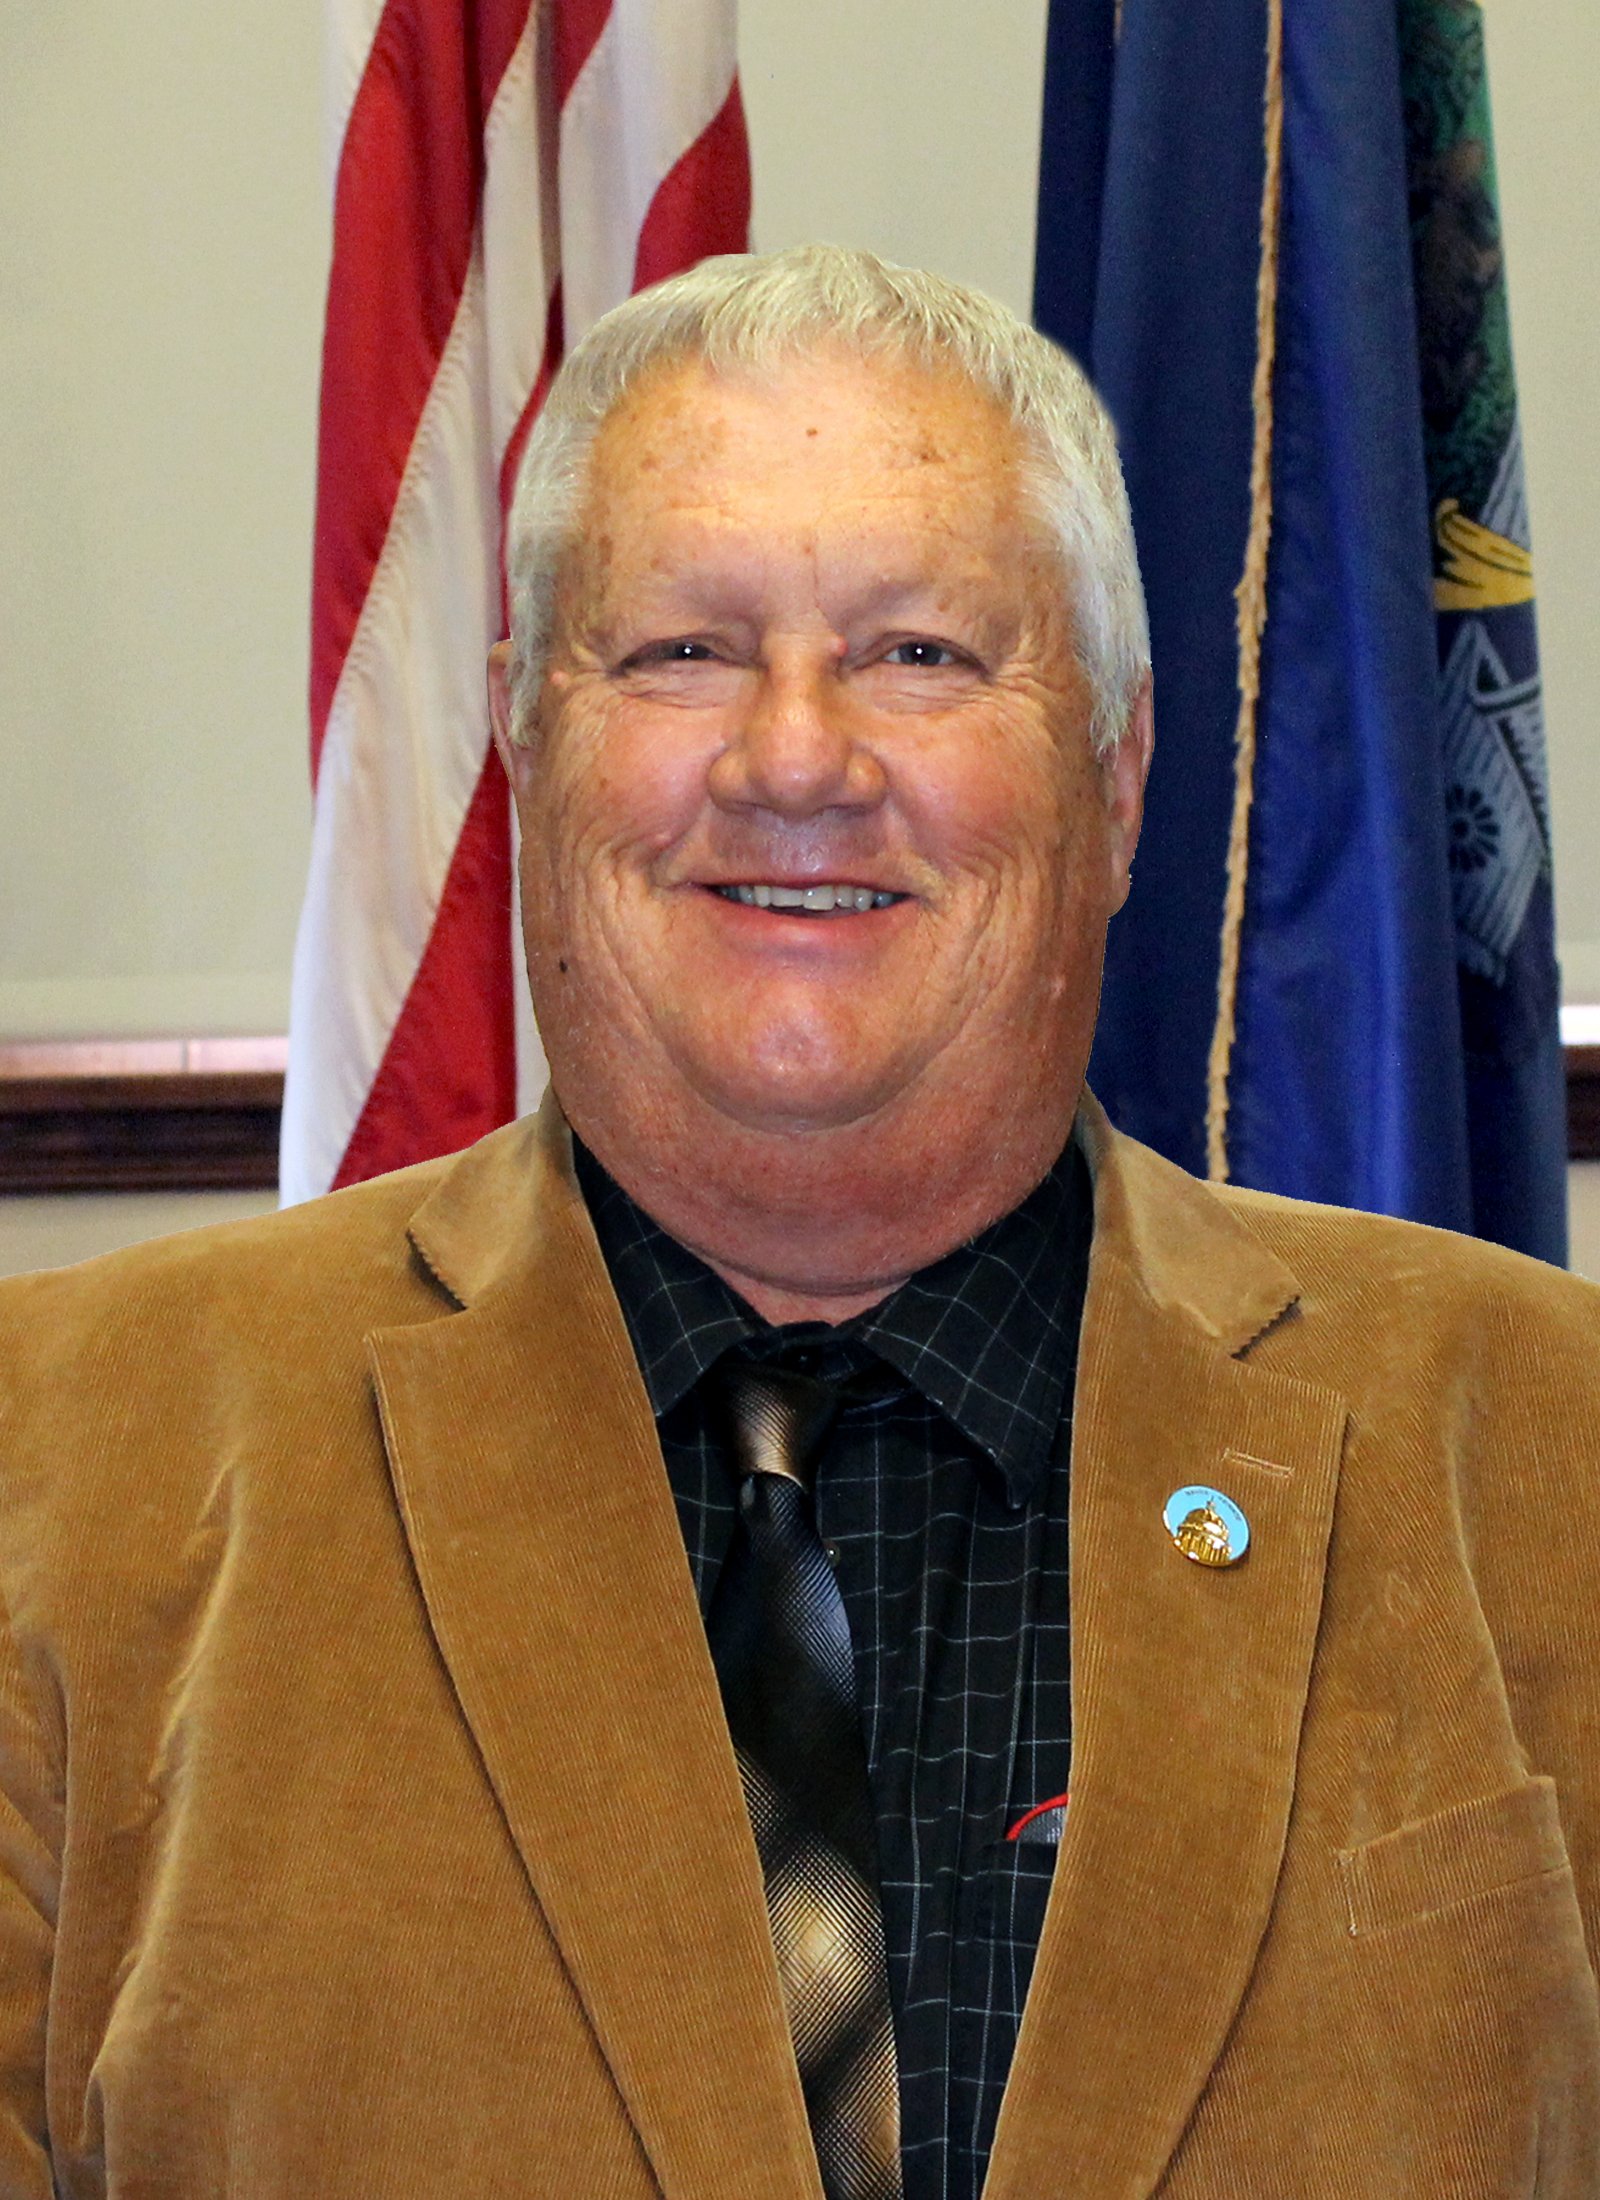  senator Jeffrey Timberlake